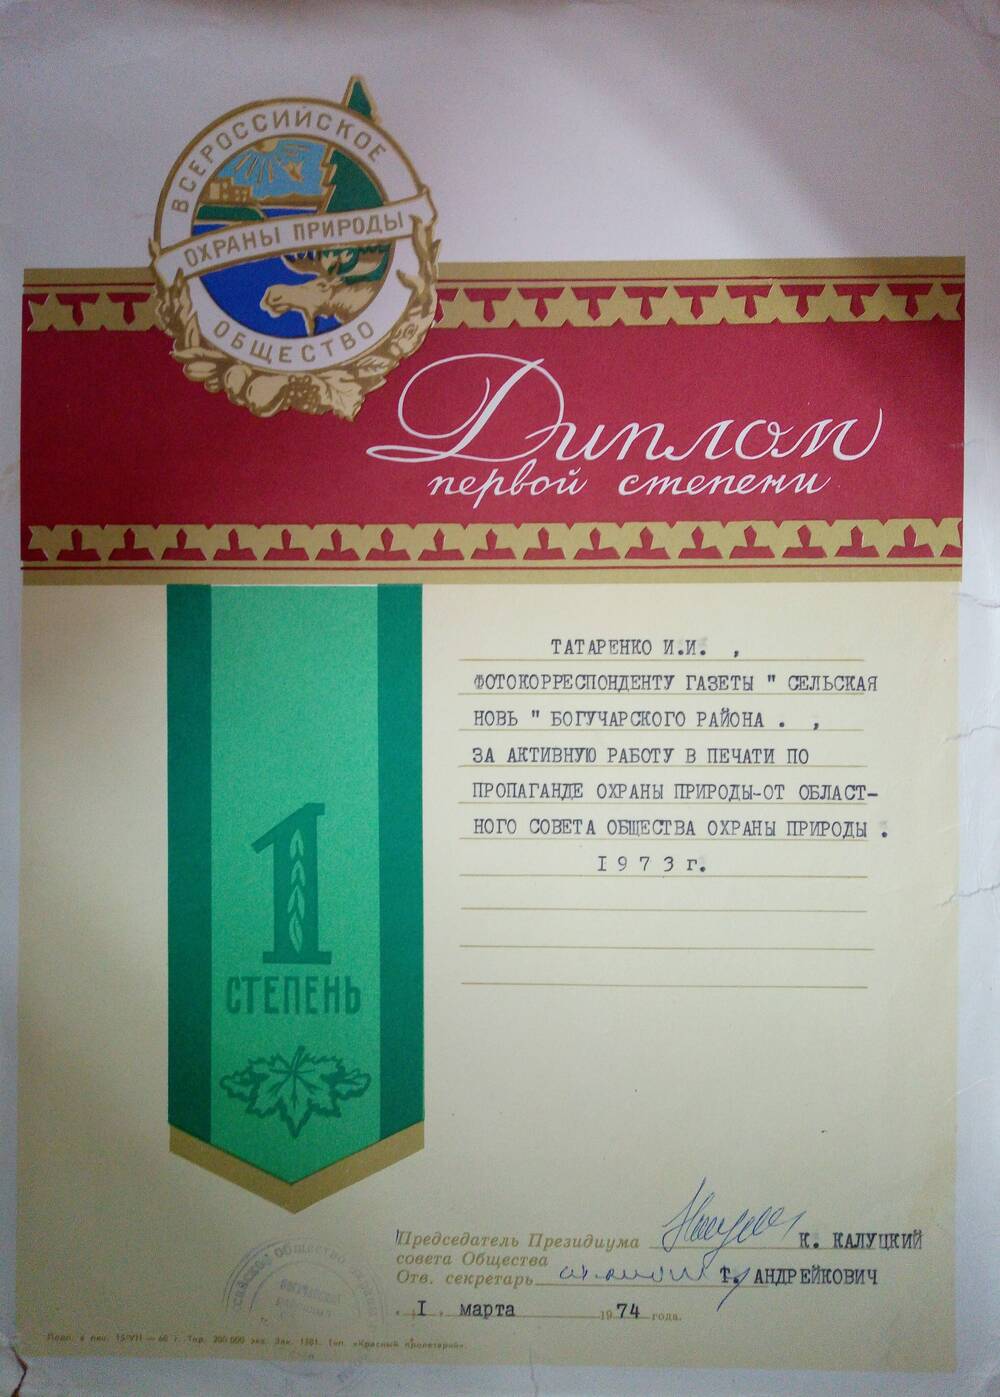 Диплом 1 степени Татаренко И.И. за активную работу в печати от 1 марта 1974 г.